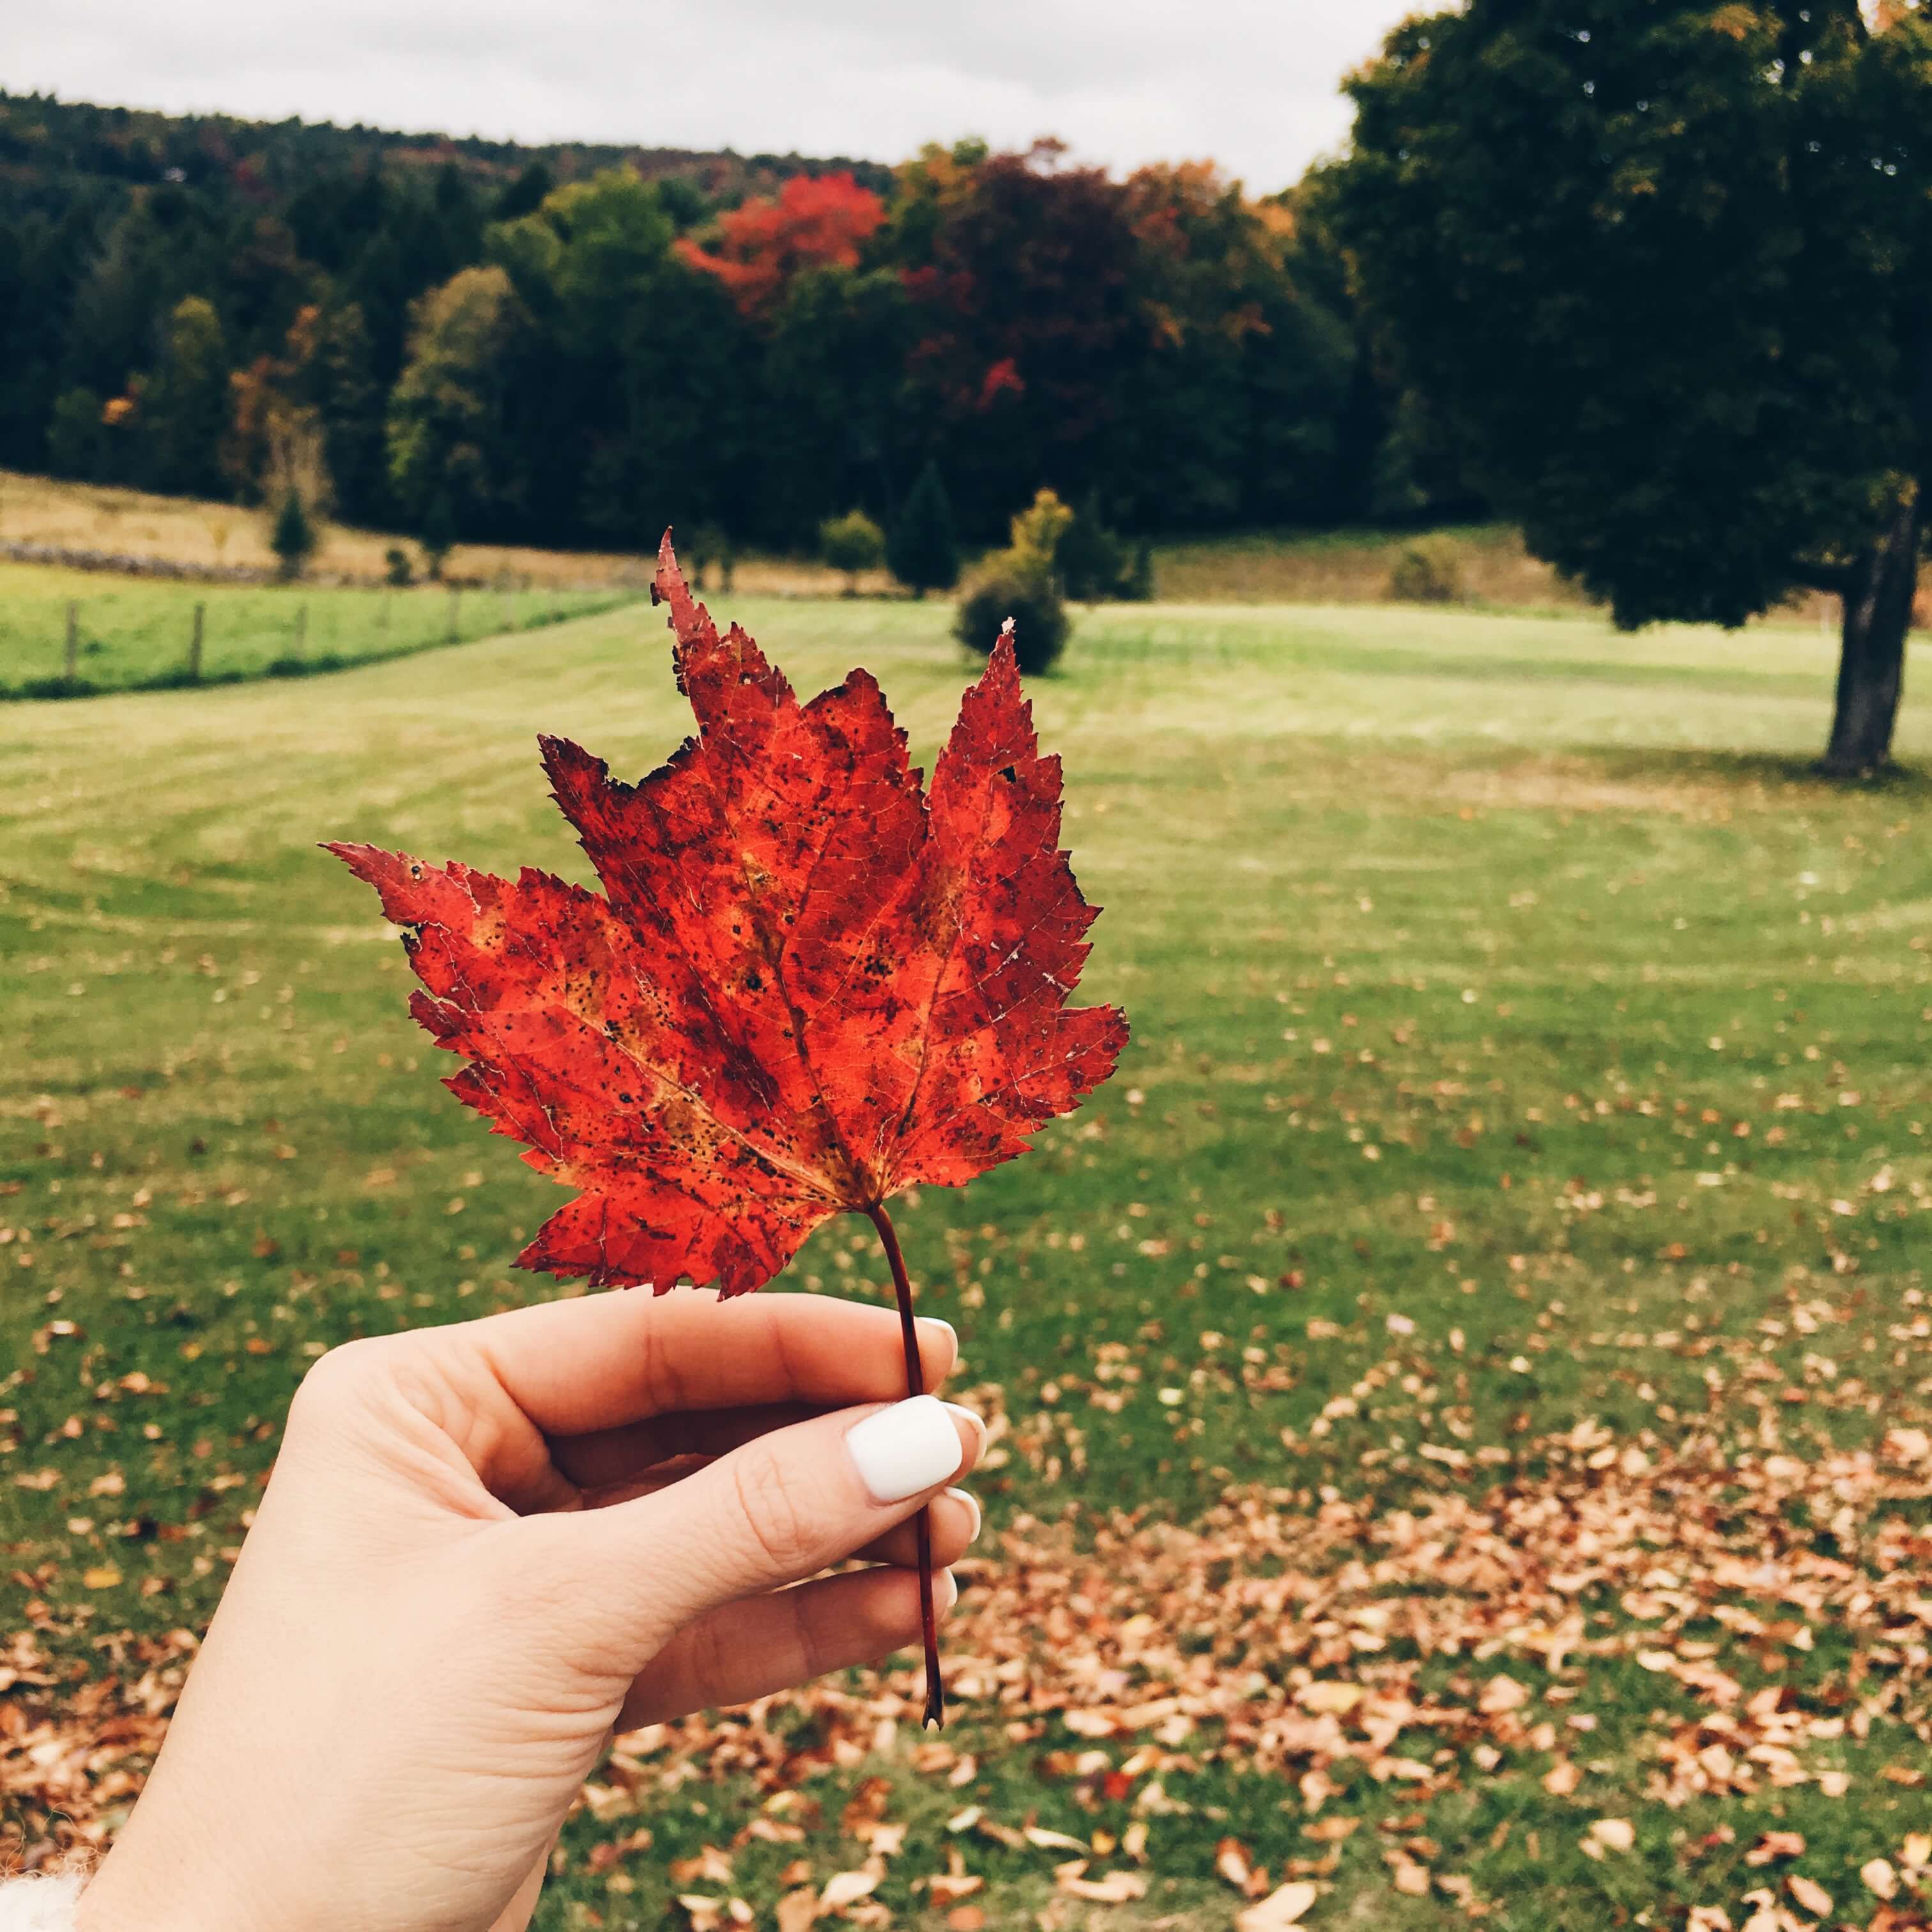 leaf peeping season in Vermont